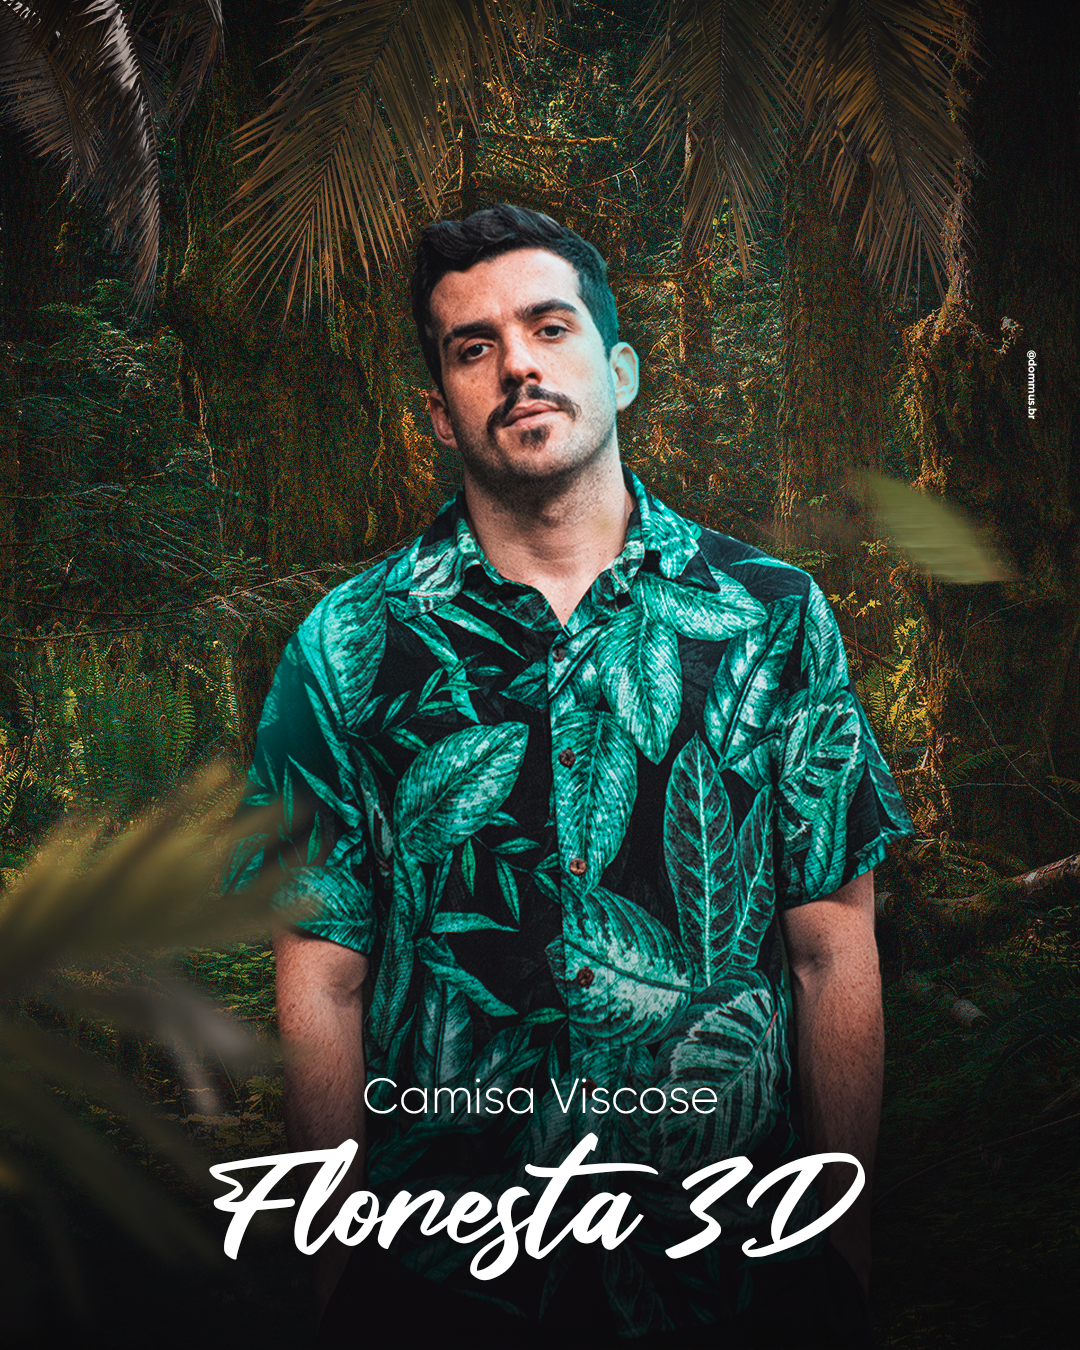 Homem com cabelo preto curto, com bigode, utilizando uma camiseta florida de cor verde esmeralda, olhando pra frente, e uma descrição: "Camisa Viscose | Floresta 3D" e background de uma floresta por trás.